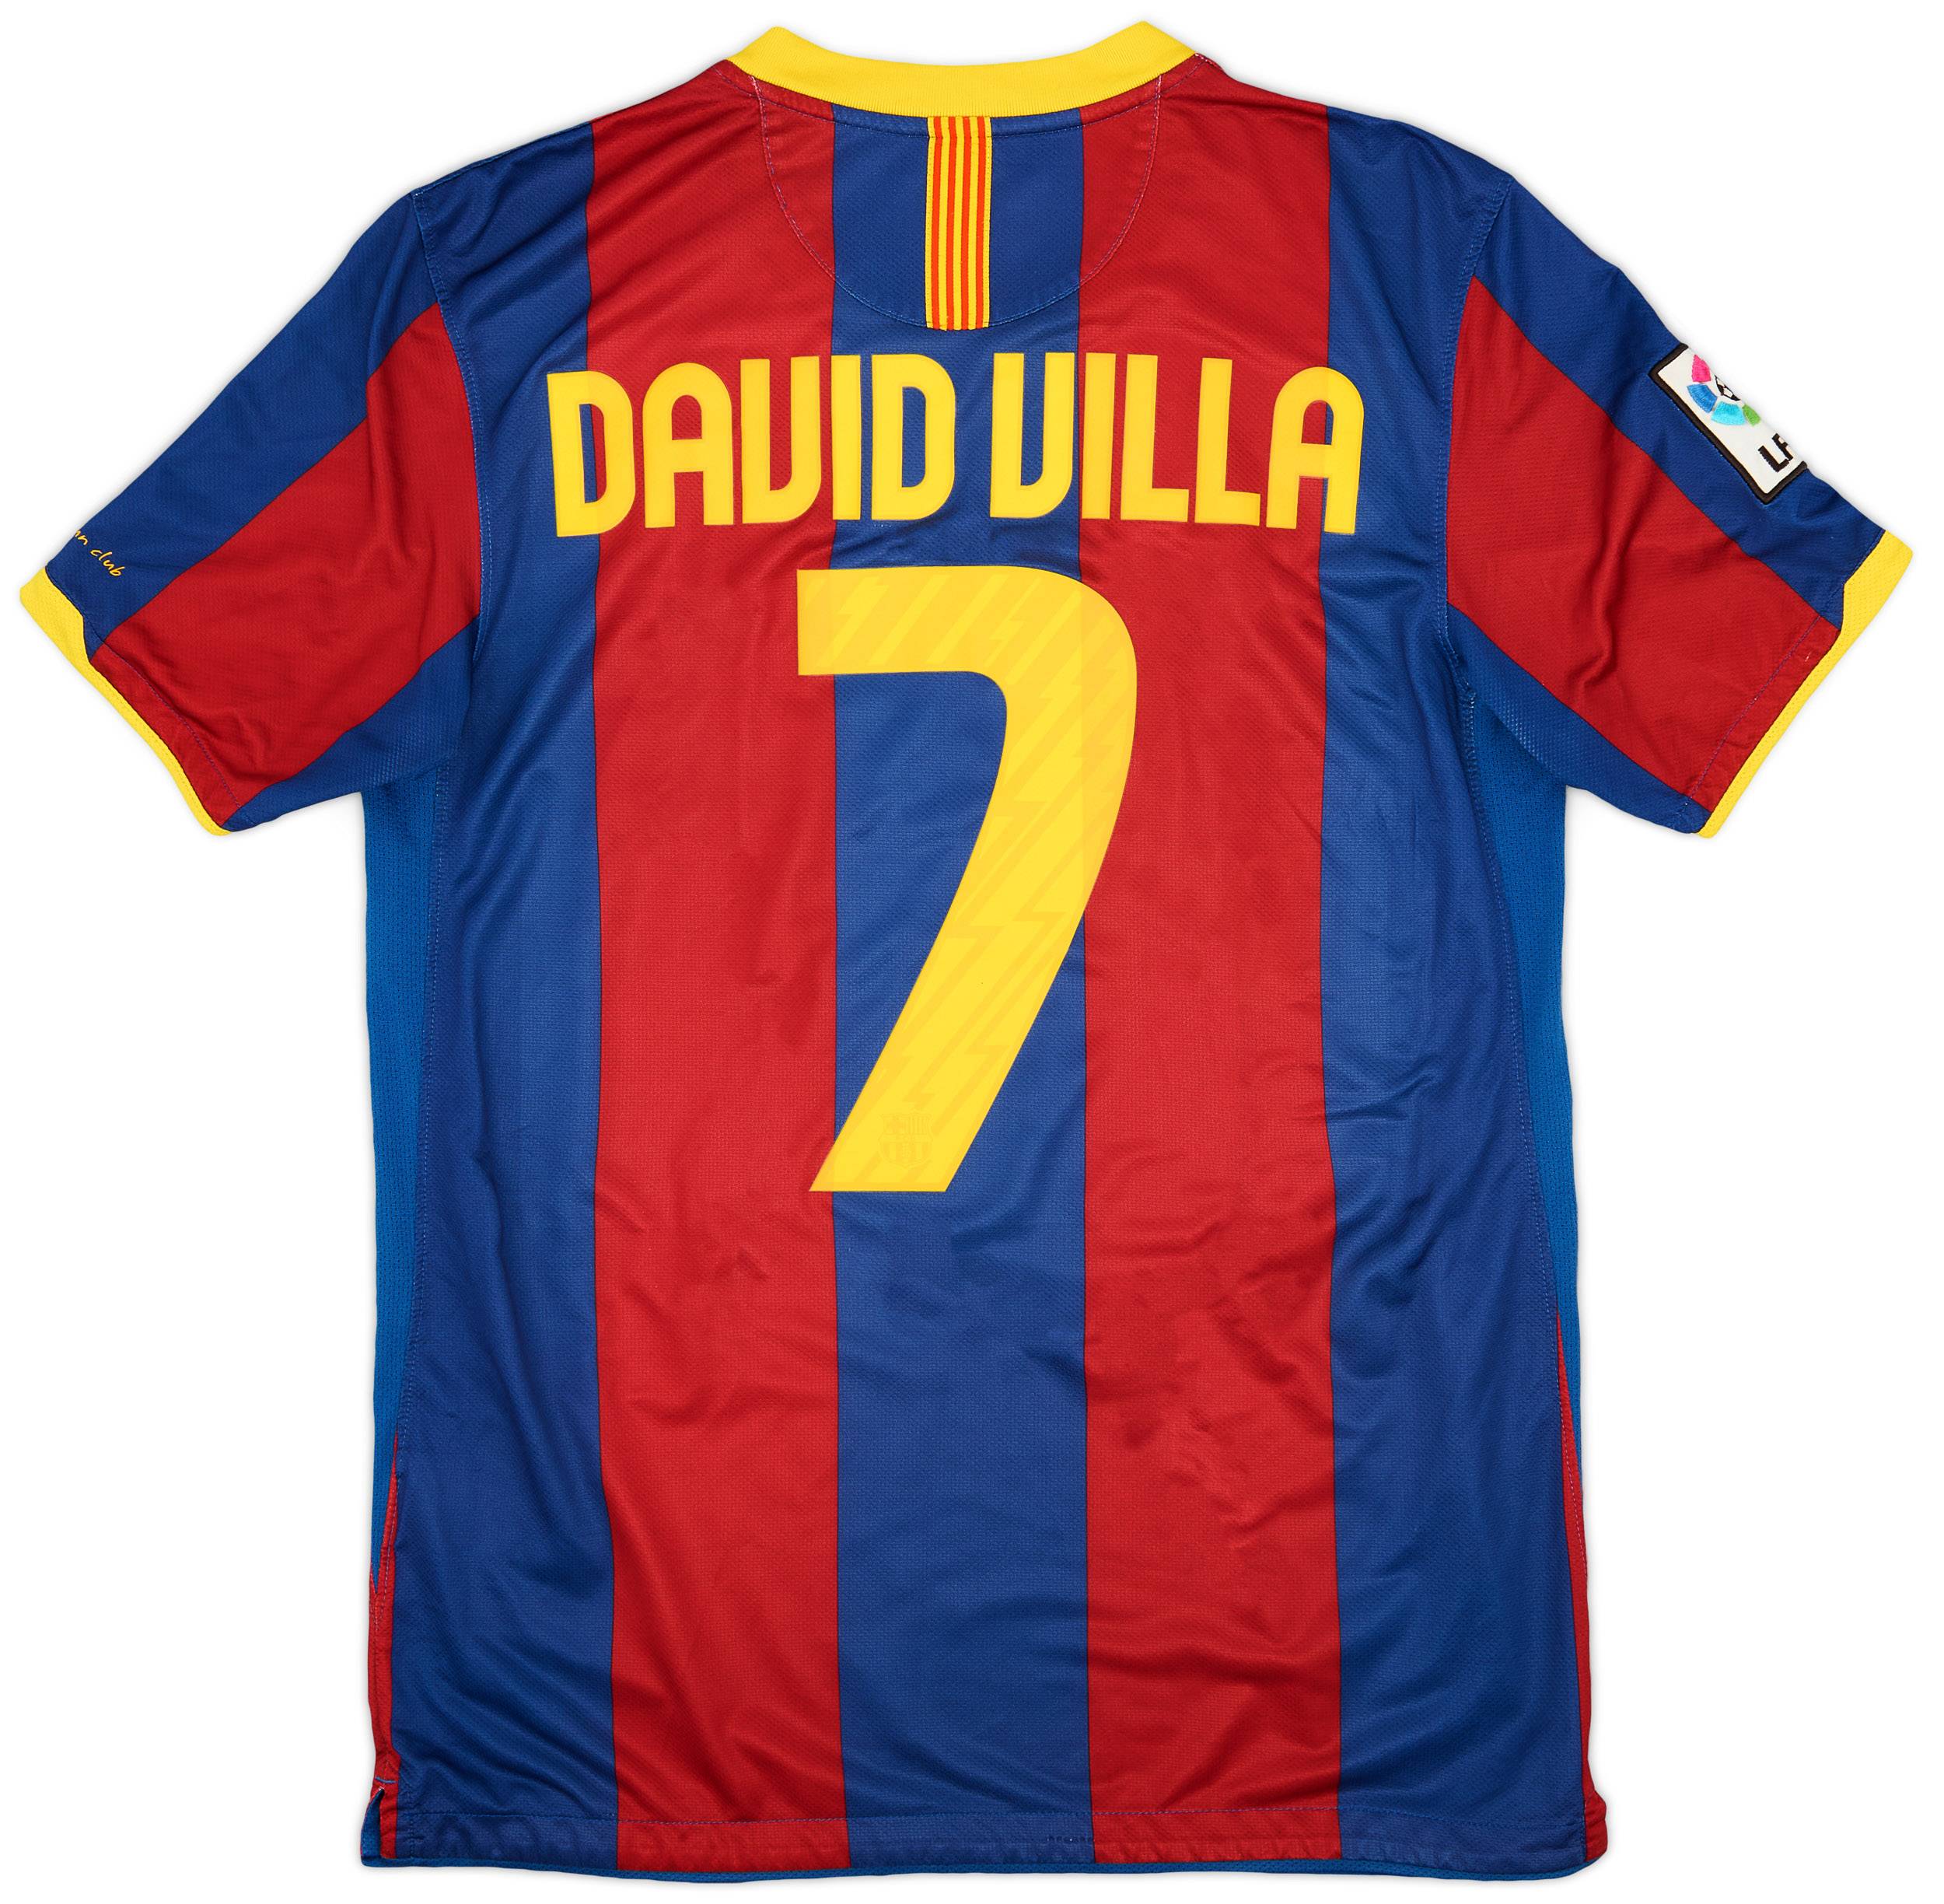 2010-11 Barcelona Home Shirt David Villa #7 - 8/10 - (M)